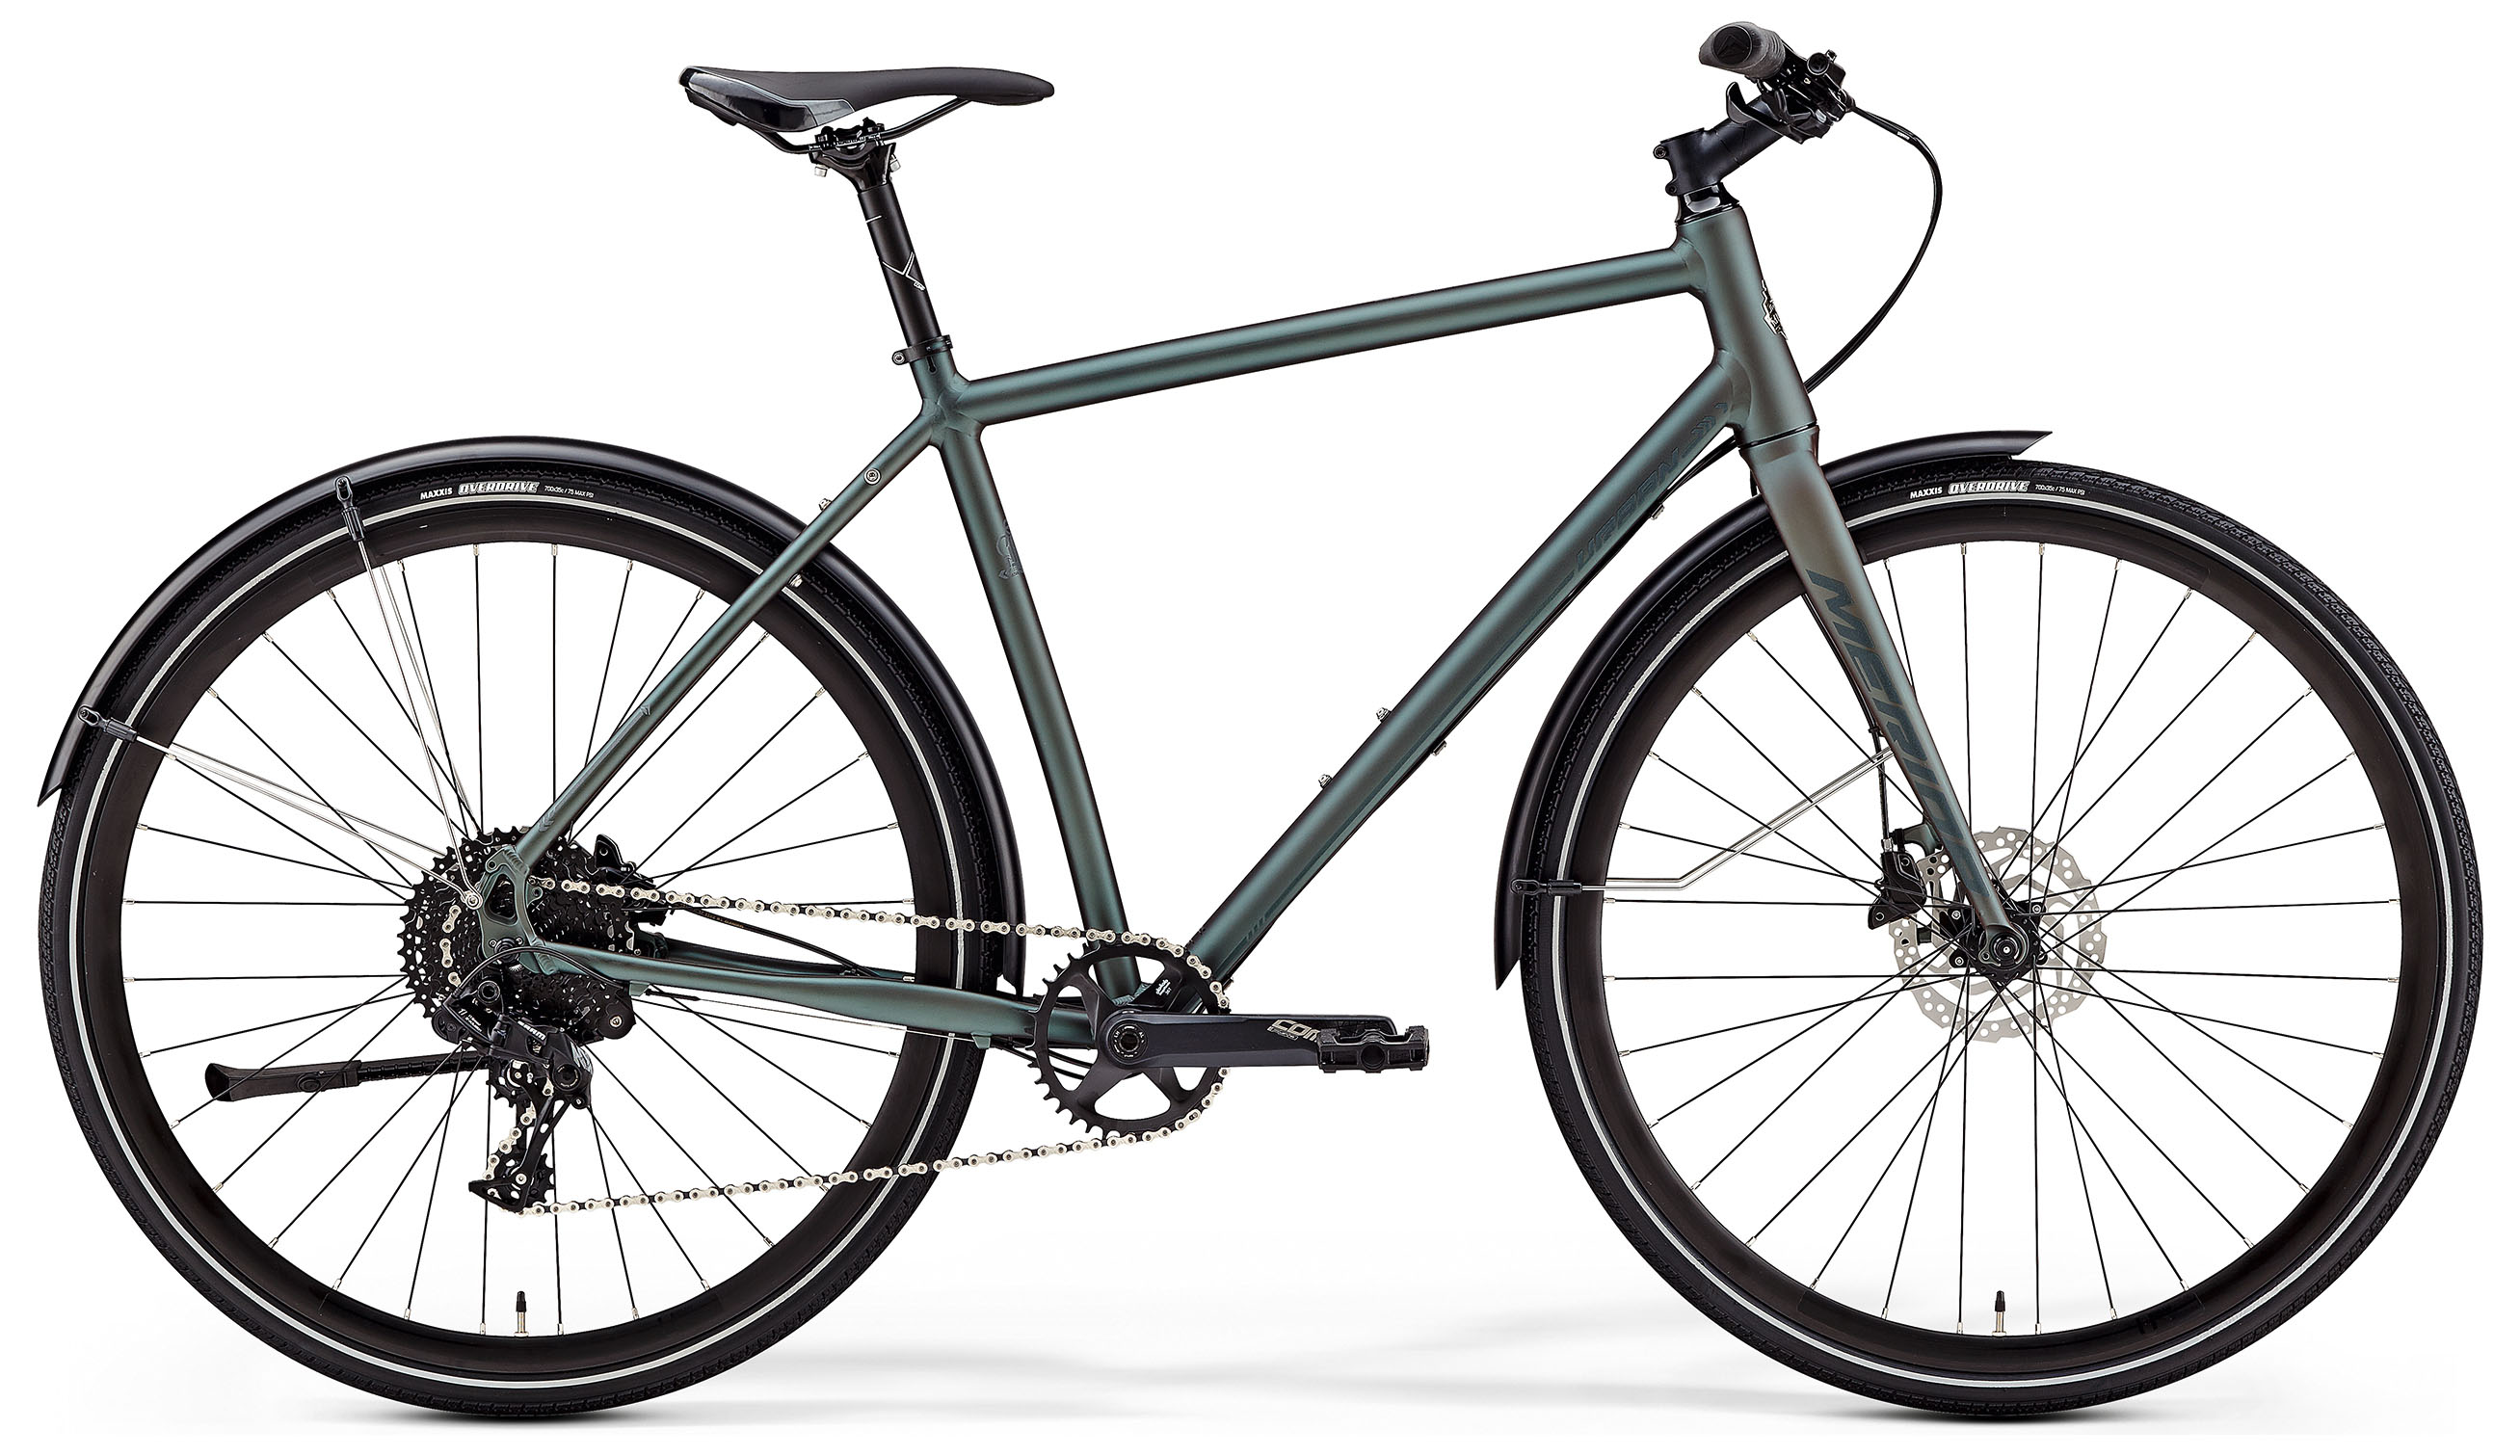  Отзывы о Городском велосипеде Merida Crossway Urban 300 2019